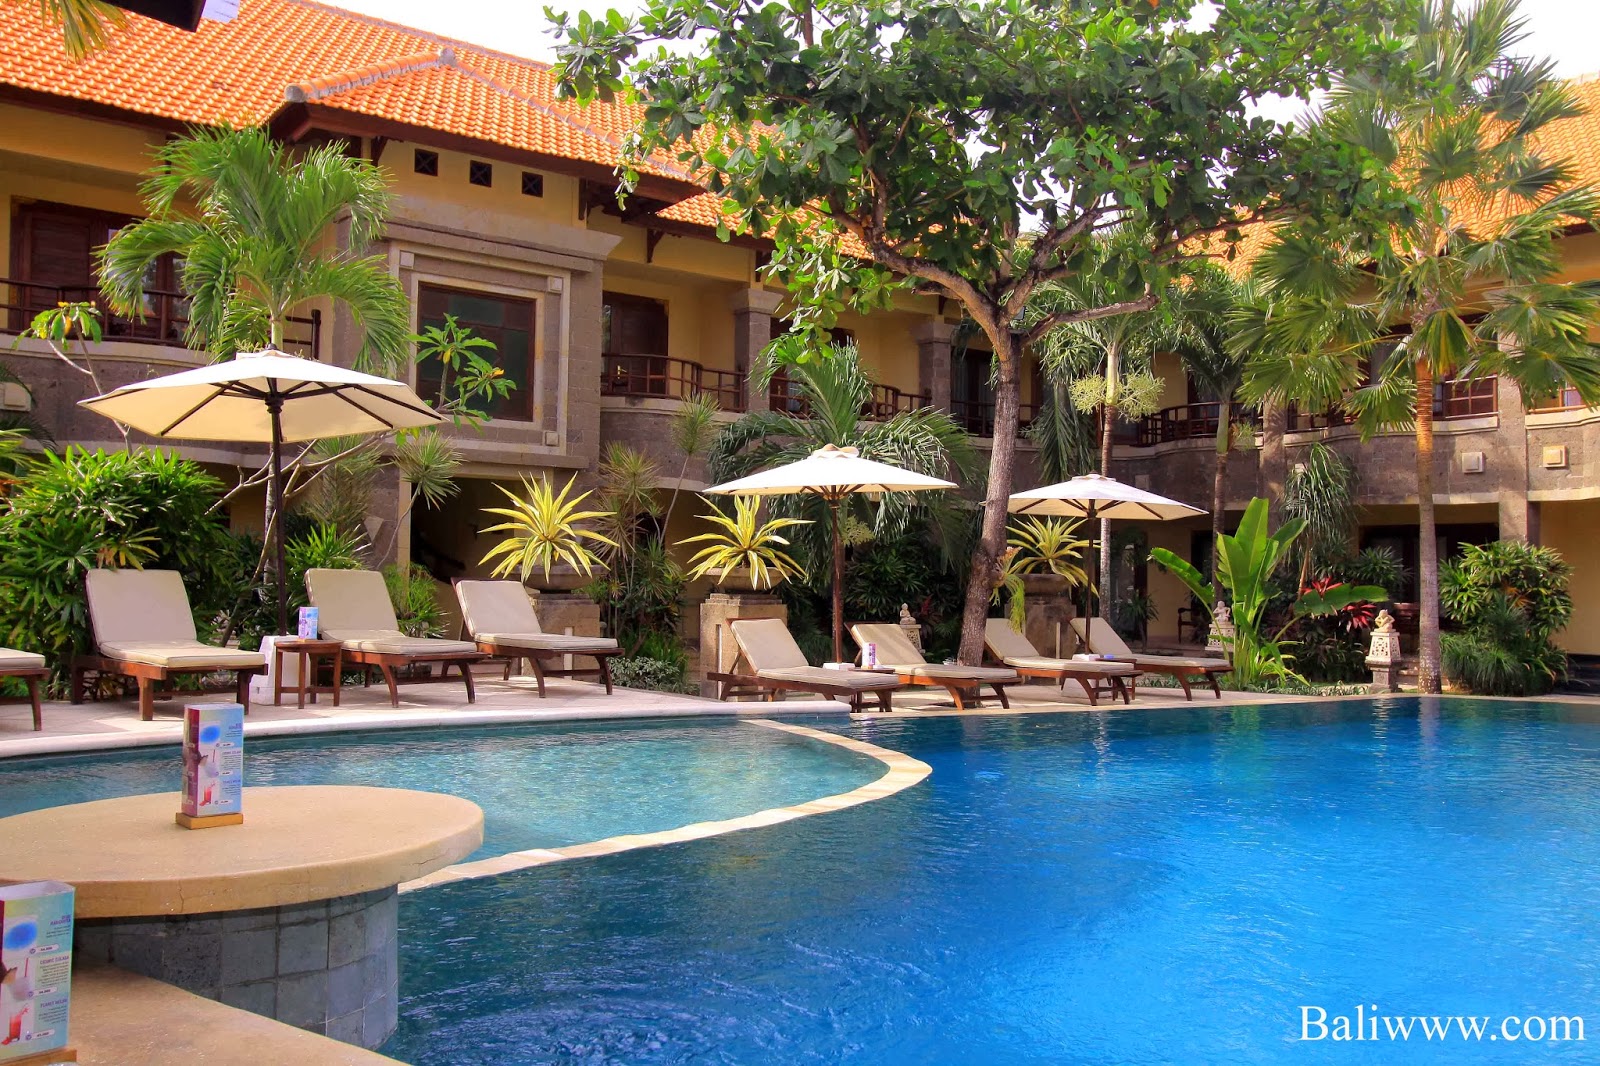  Hotel Murah di Bali  Tempat wisata di  Bali 